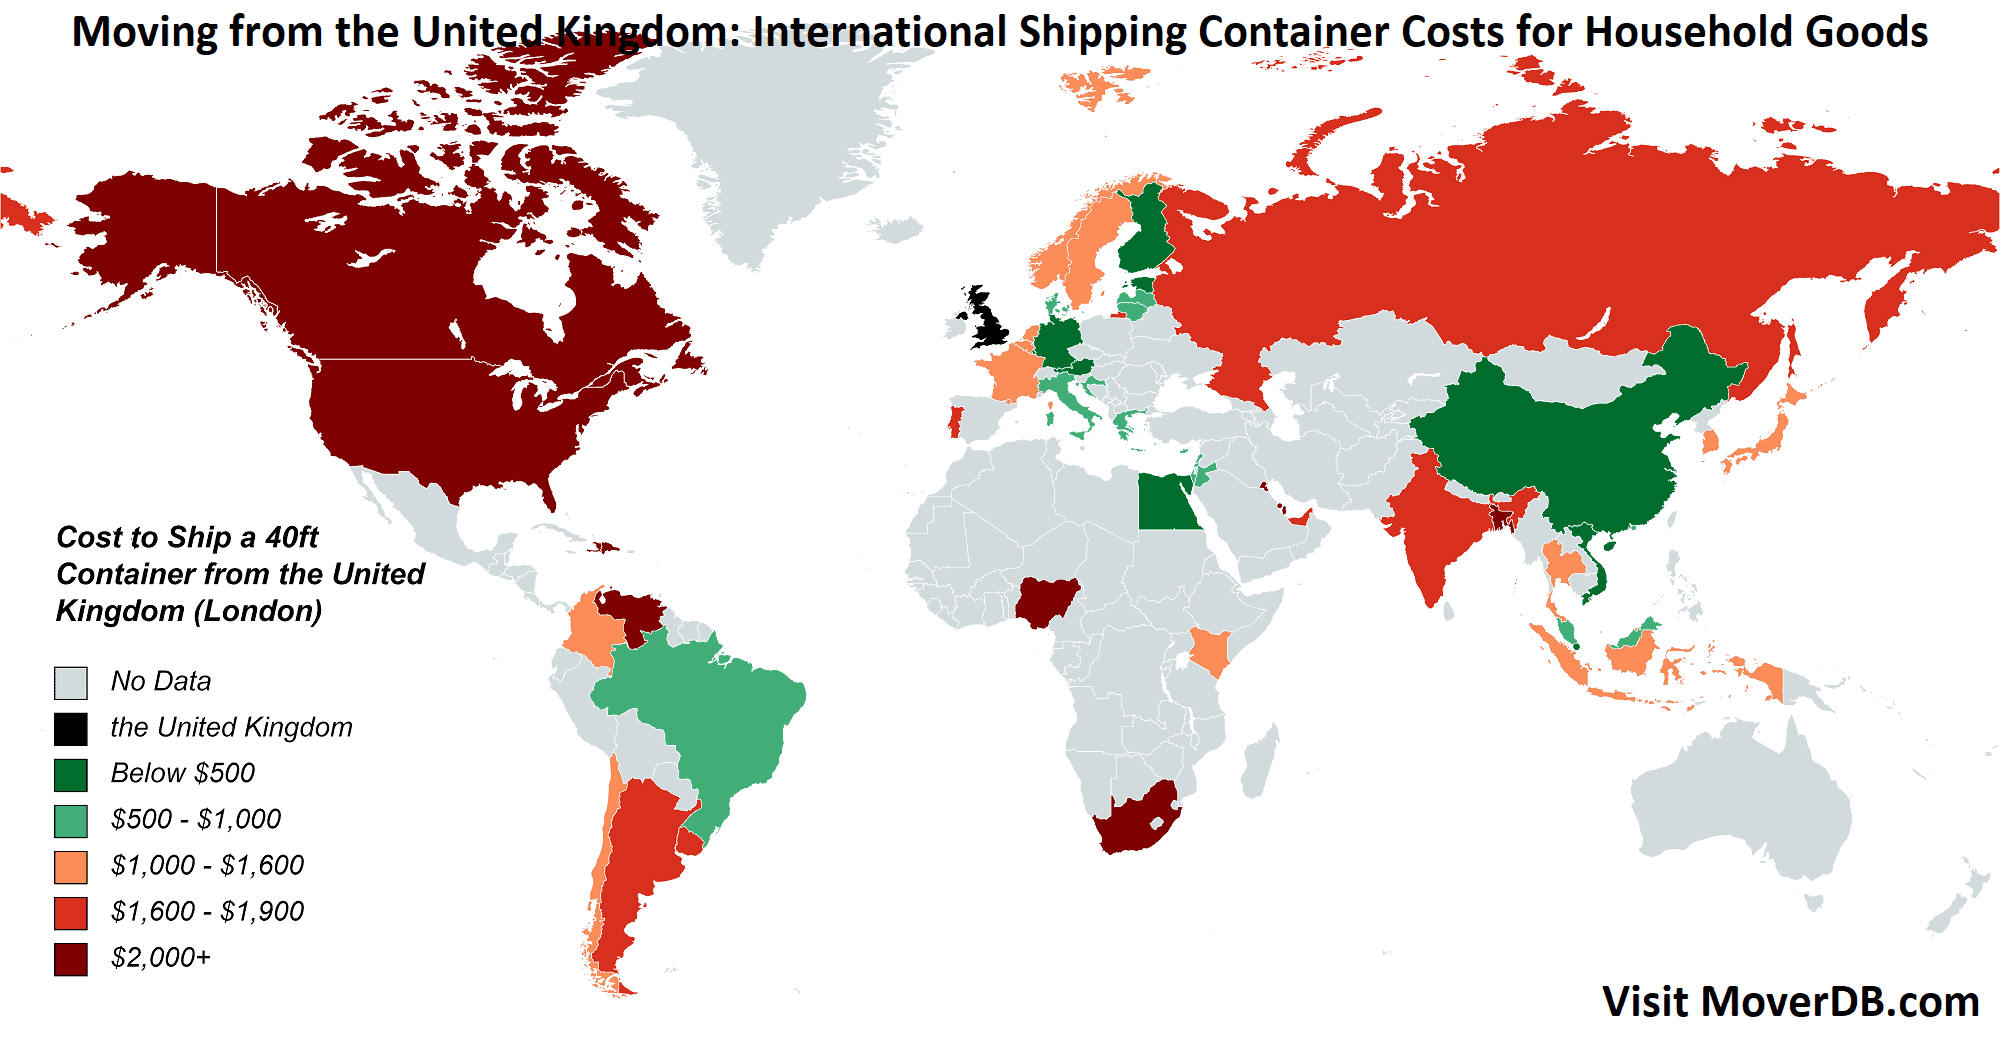 Costi di spedizione dei container dal Regno Unito (Londra)